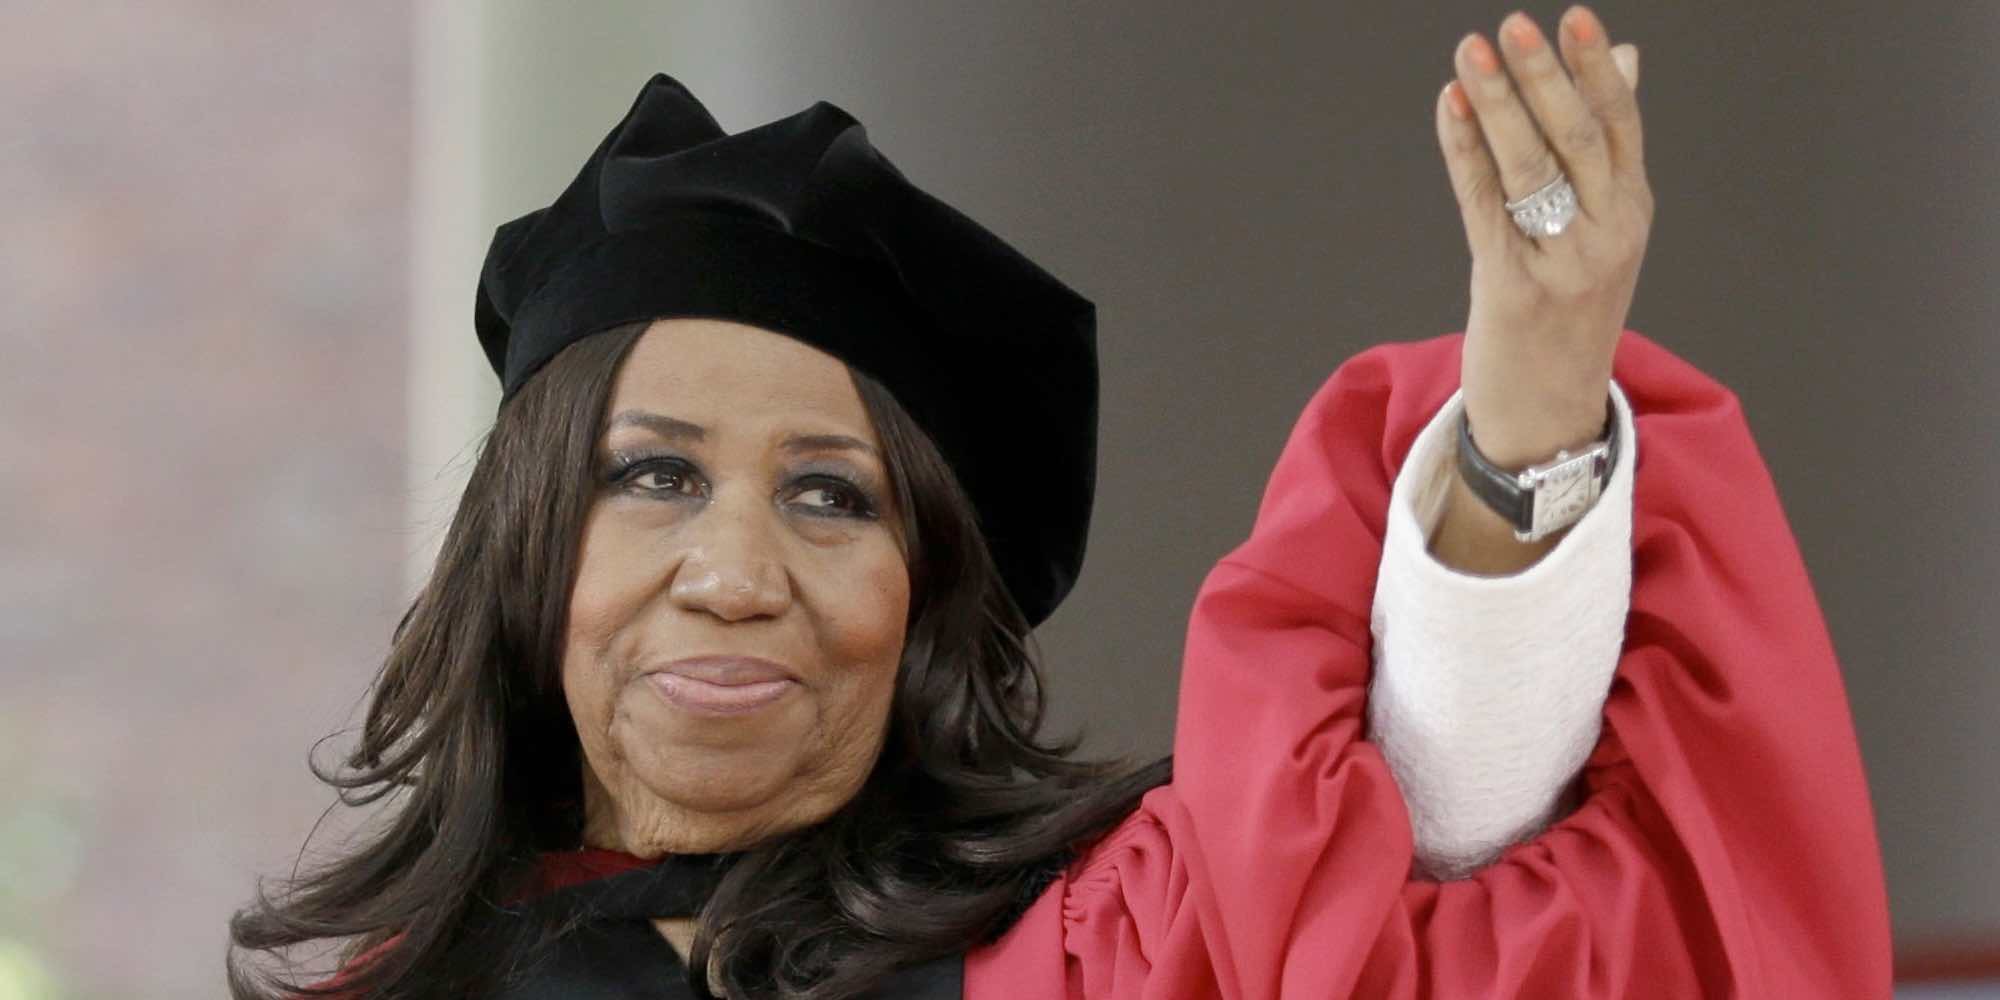 La familia de Aretha Franklin agradece el cariño recibido: "Hemos perdido a la matriarca"